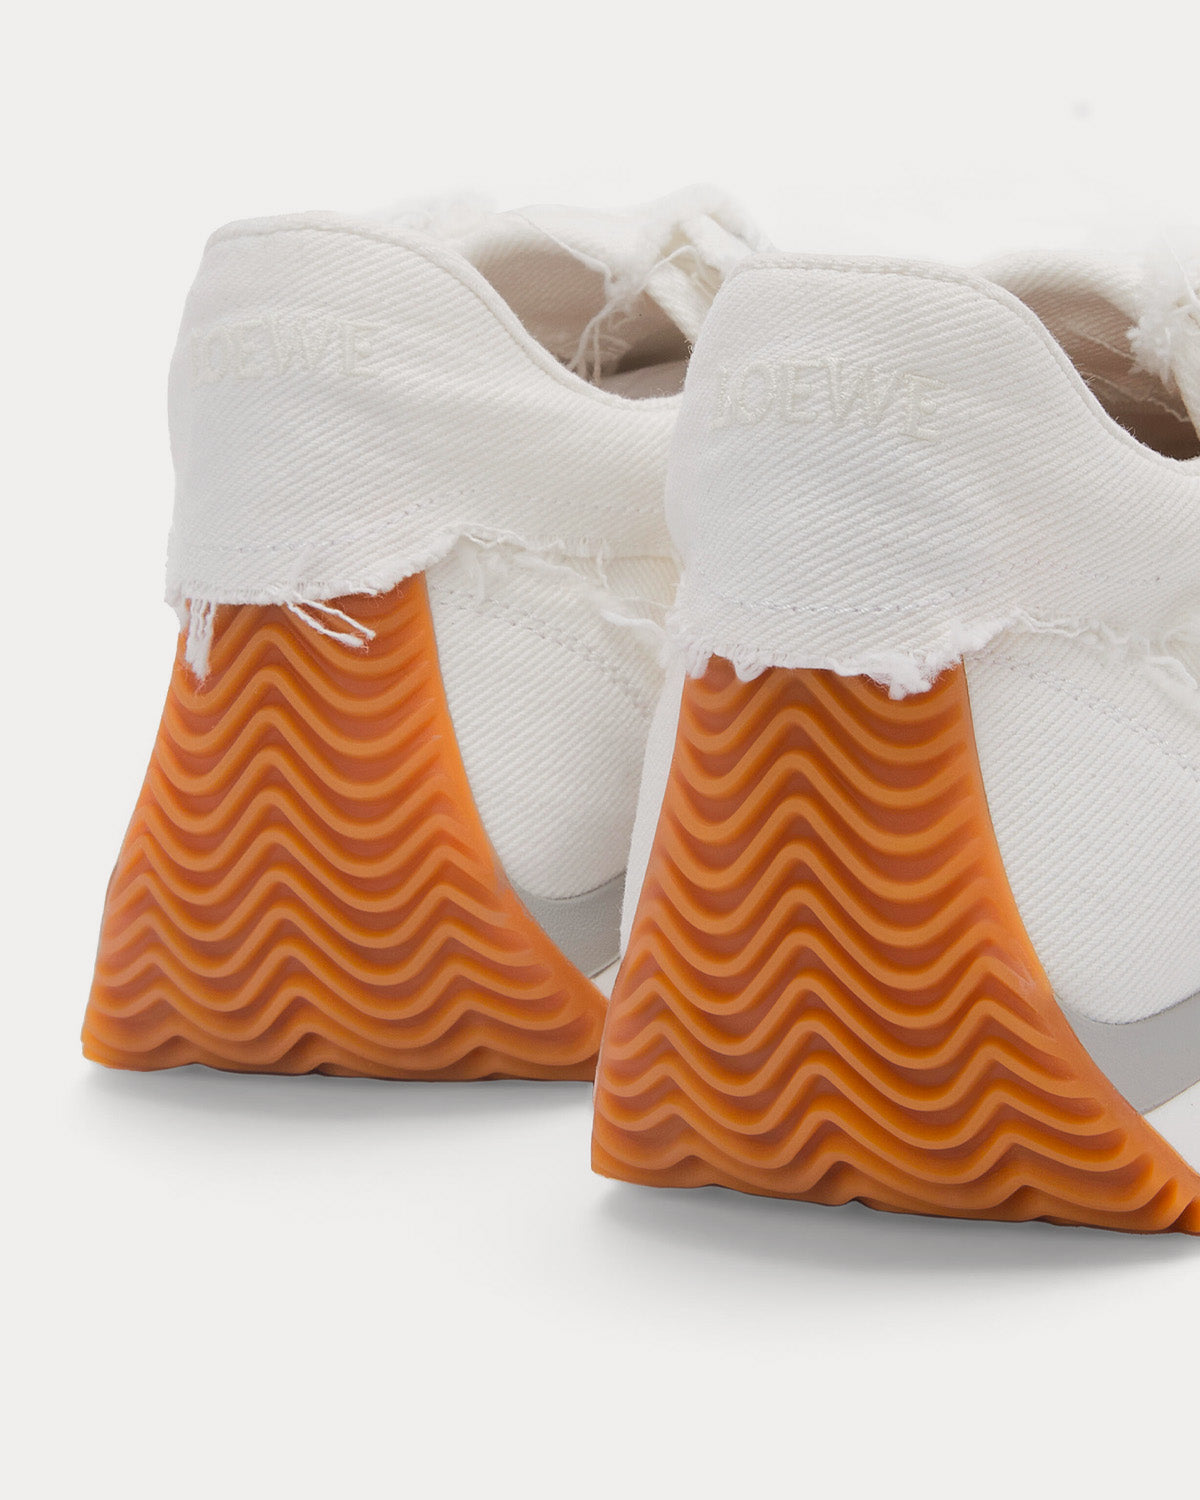 Loewe - Flow Runner in Denim White Low Top Sneakers